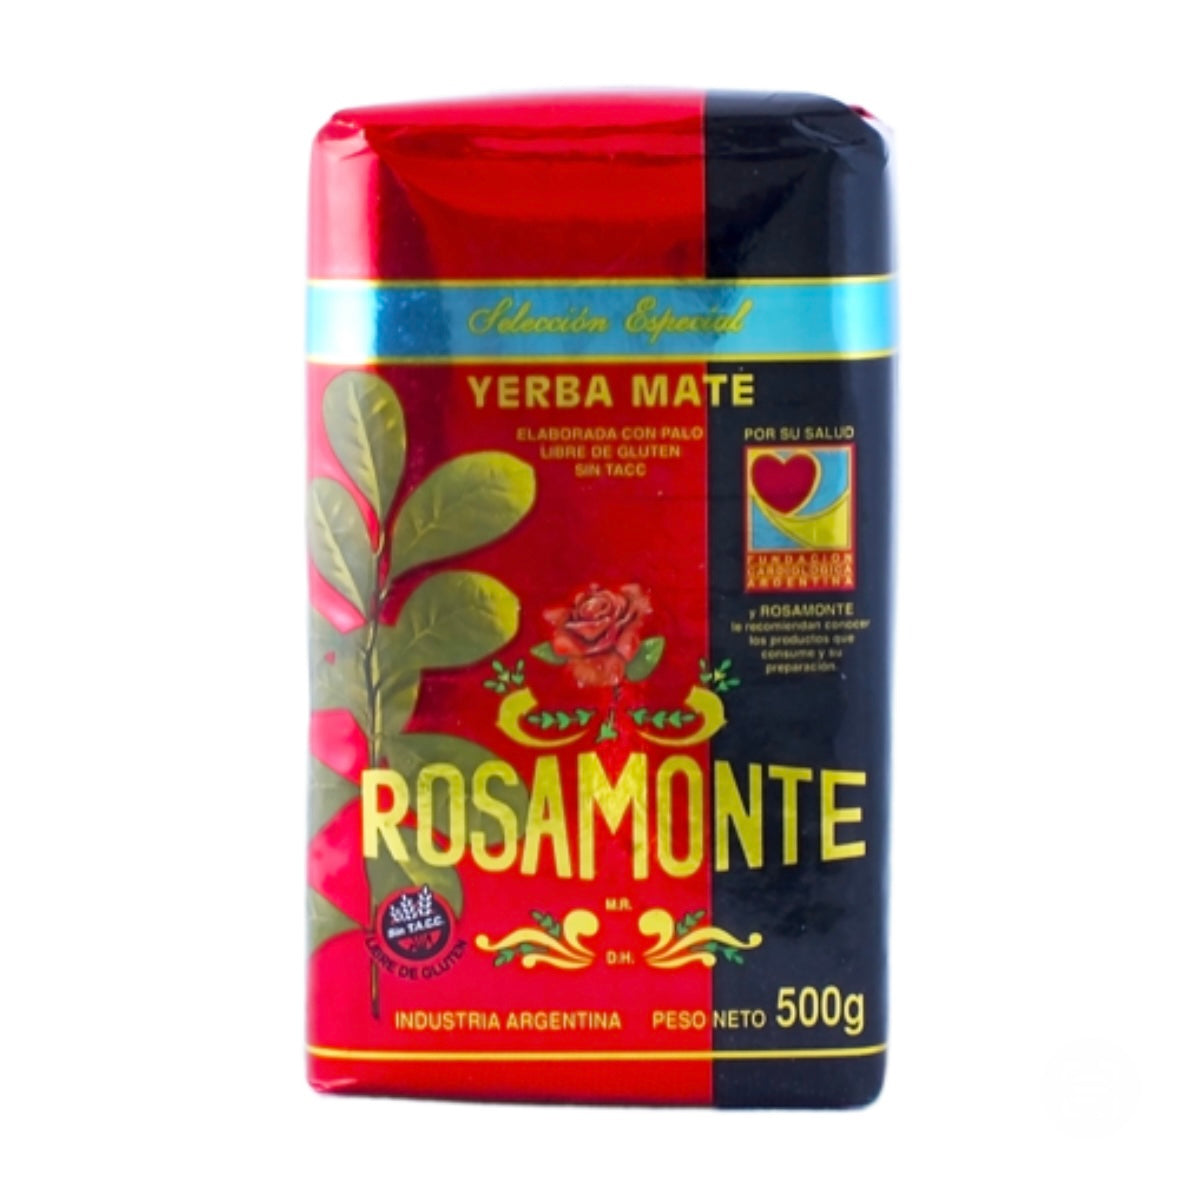 Rosamonte Special - Yerba Mate Selezione Speciale - 500g